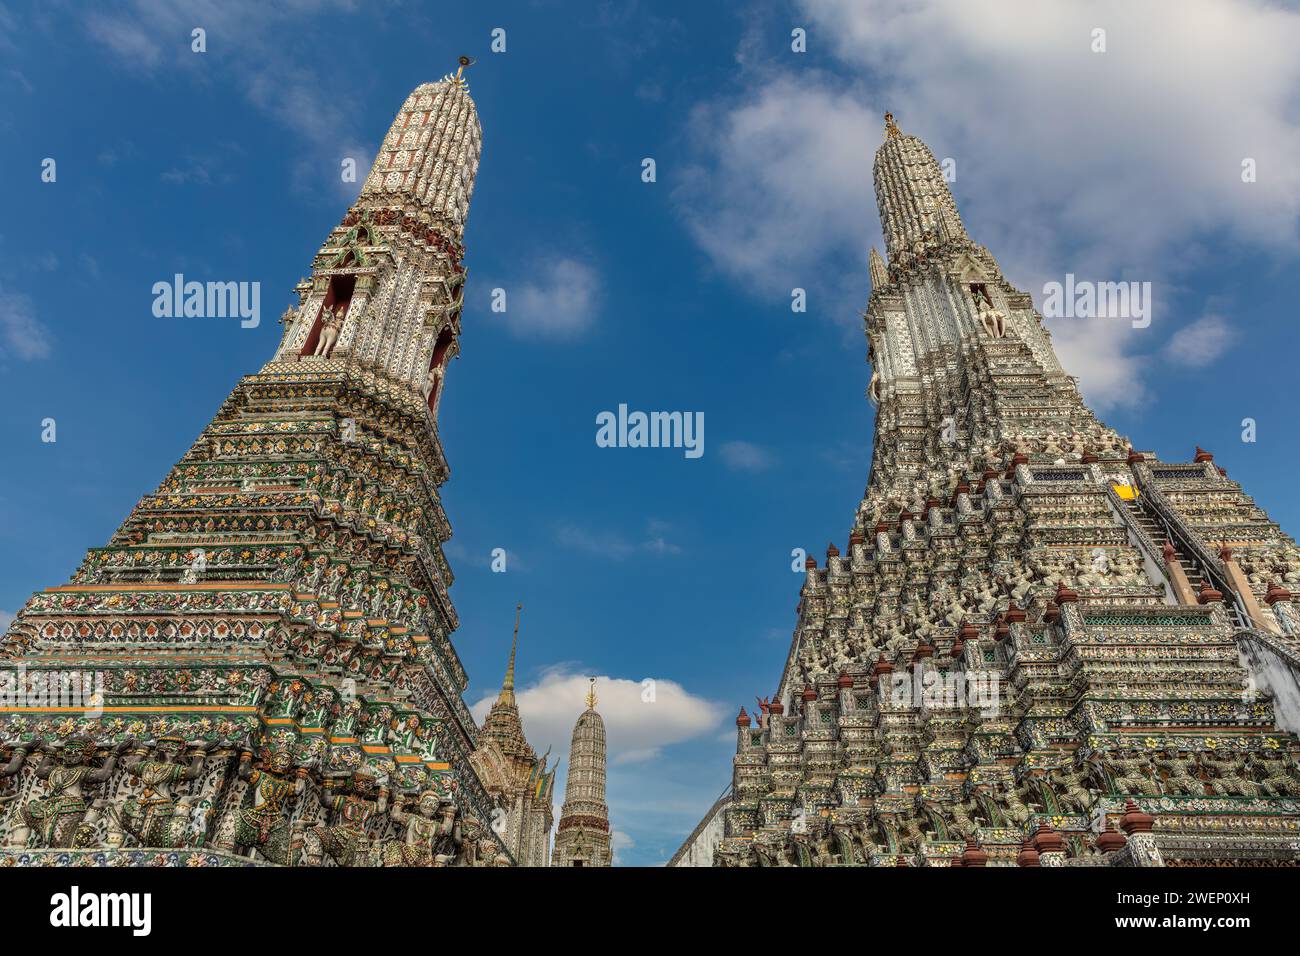 Due torreggianti prangs al Wat Arun (Tempio dell'Alba), a Bangkok, Thailandia. Altre prangs visibili sullo sfondo. Cielo blu e nuvole in alto. Foto Stock